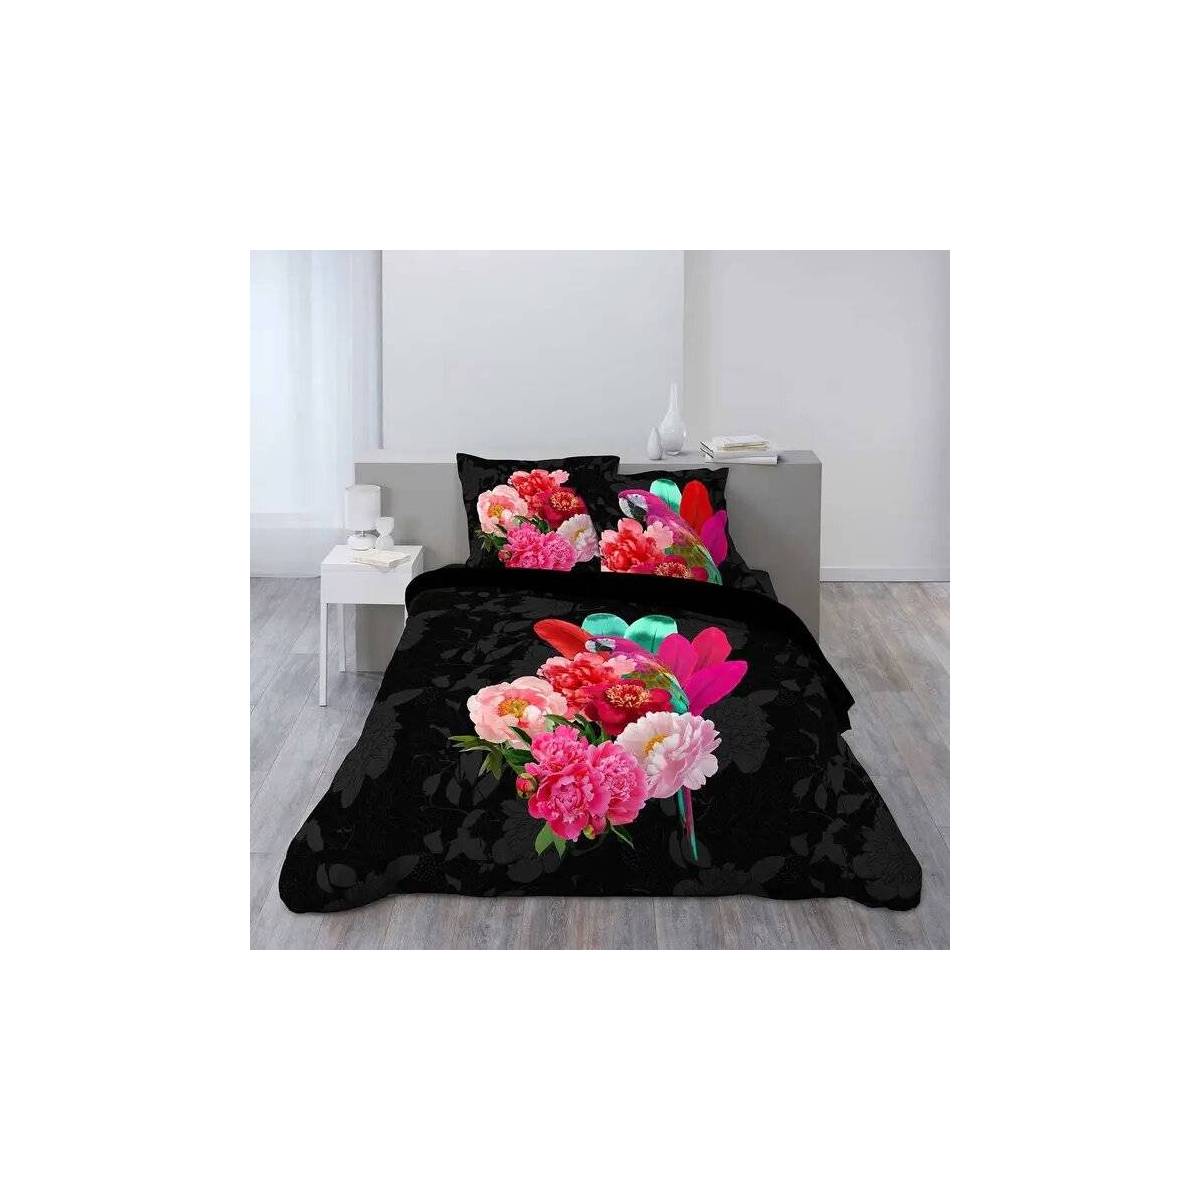 Bettbezug Flowers & Parrot Perropink 200 x 200 cm schwarz